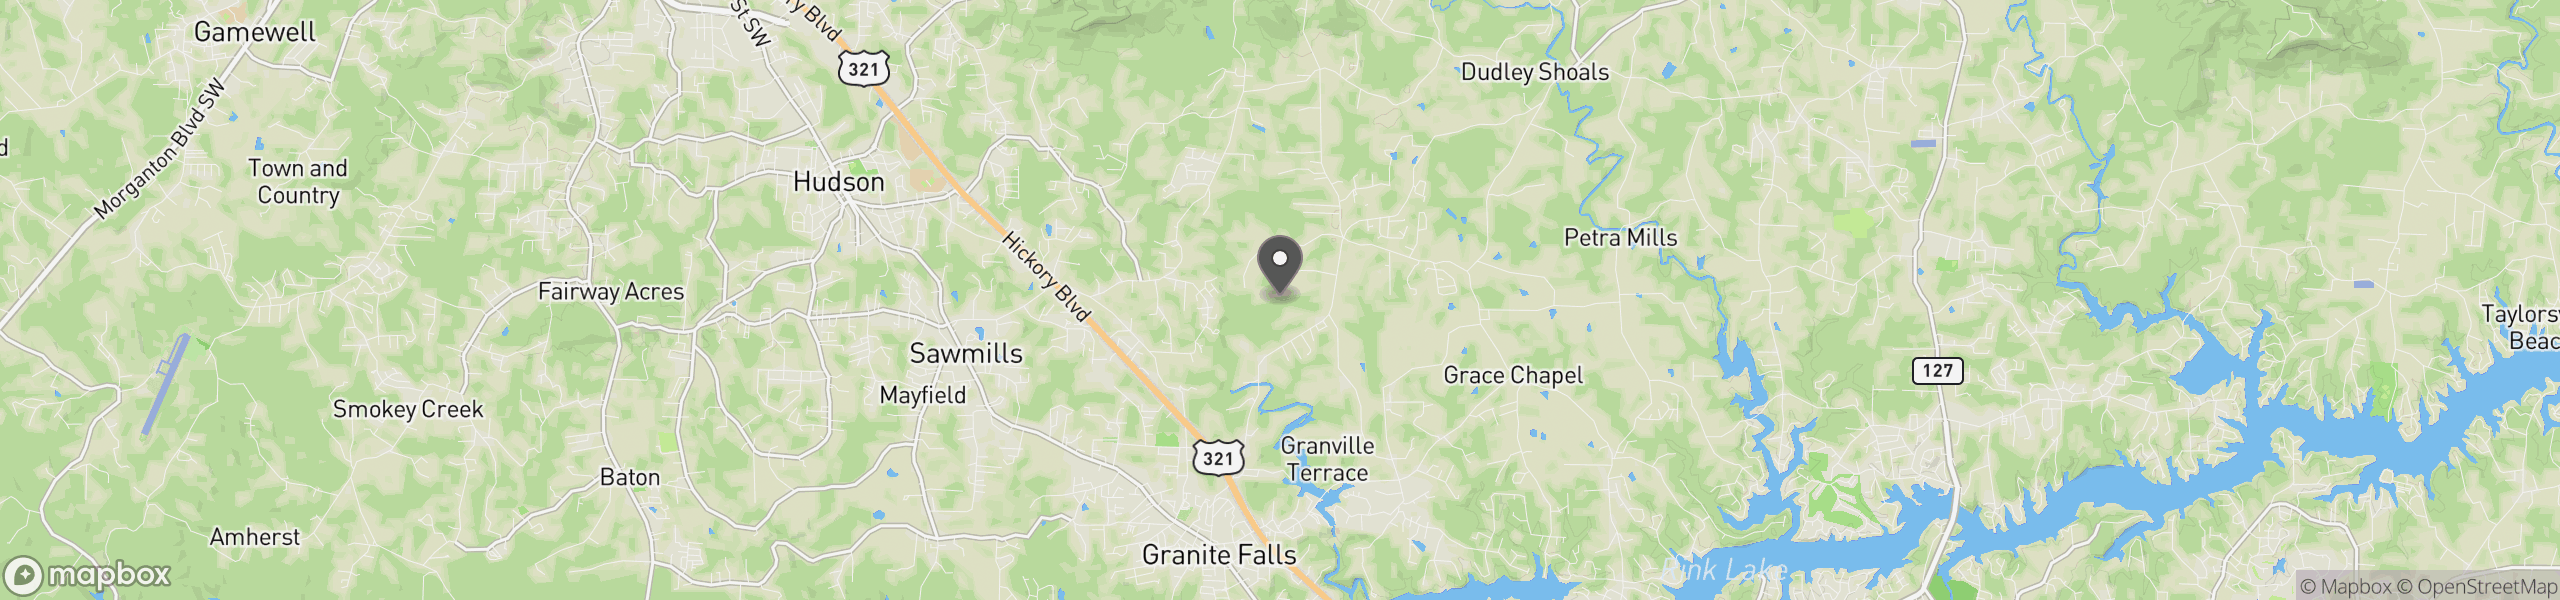 Granite Falls, NC